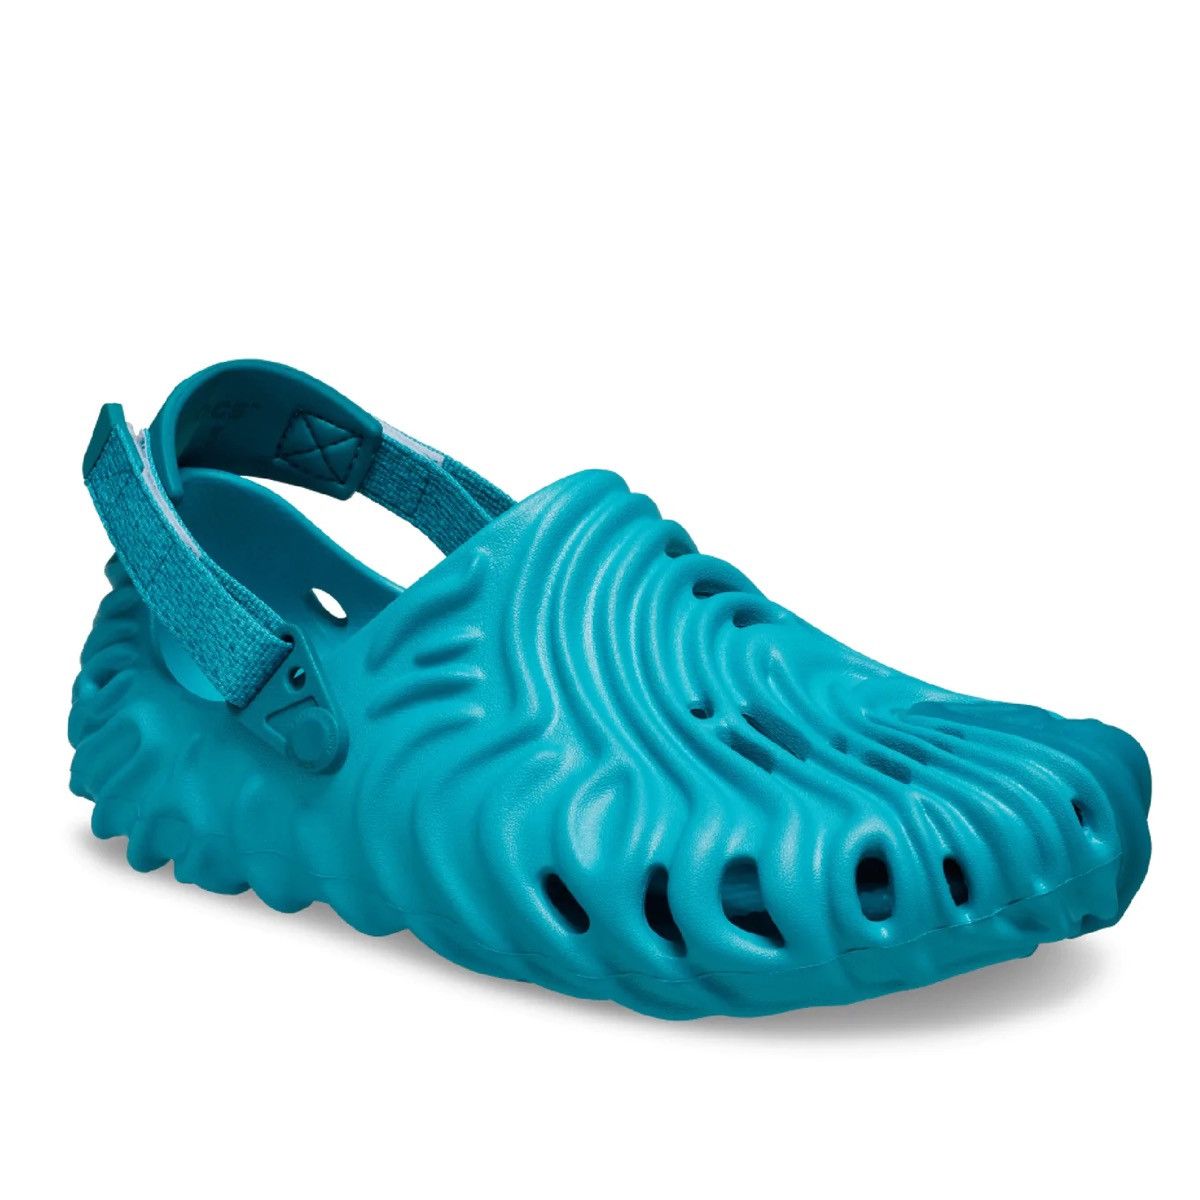 Crocs Crocs Pollex Clog Salehe Blue Turquoise Turq Tonic Size 11